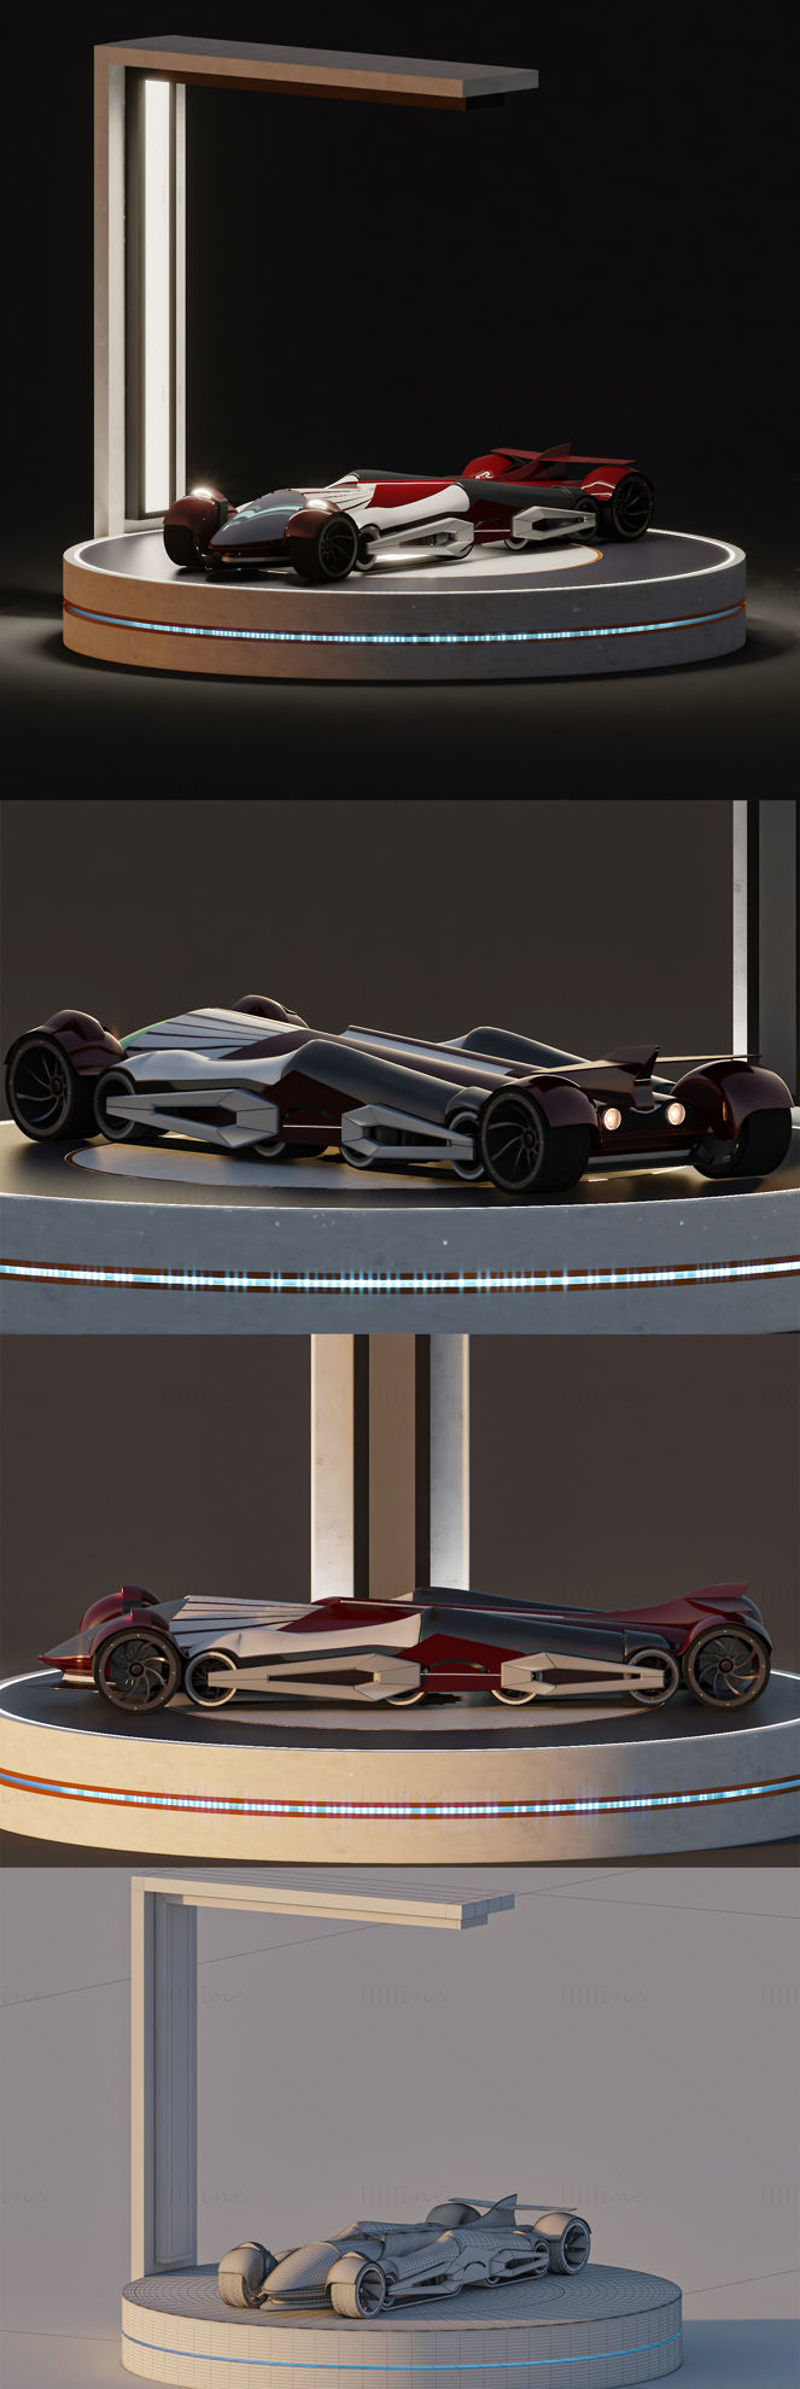 Konsept sportsbil + stand 3D modell scene